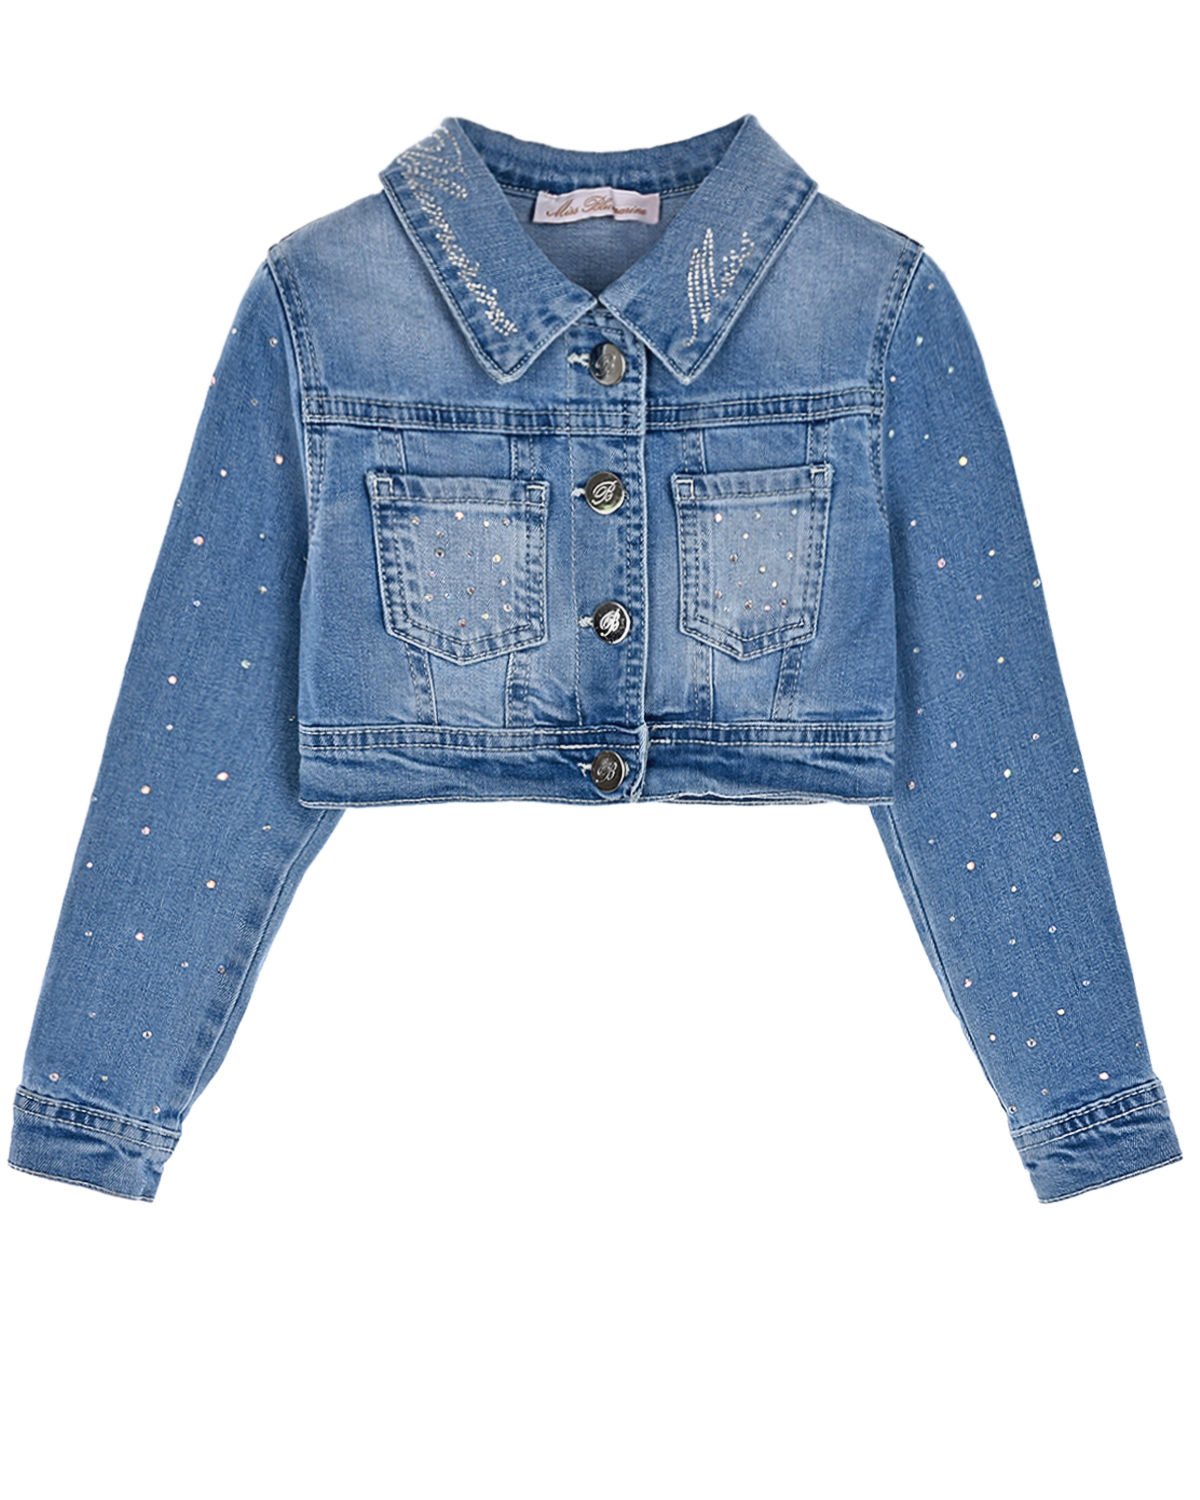 Укороченная джинсовая куртка с бусинами Miss Blumarine детская, размер 92, цвет синий - фото 1